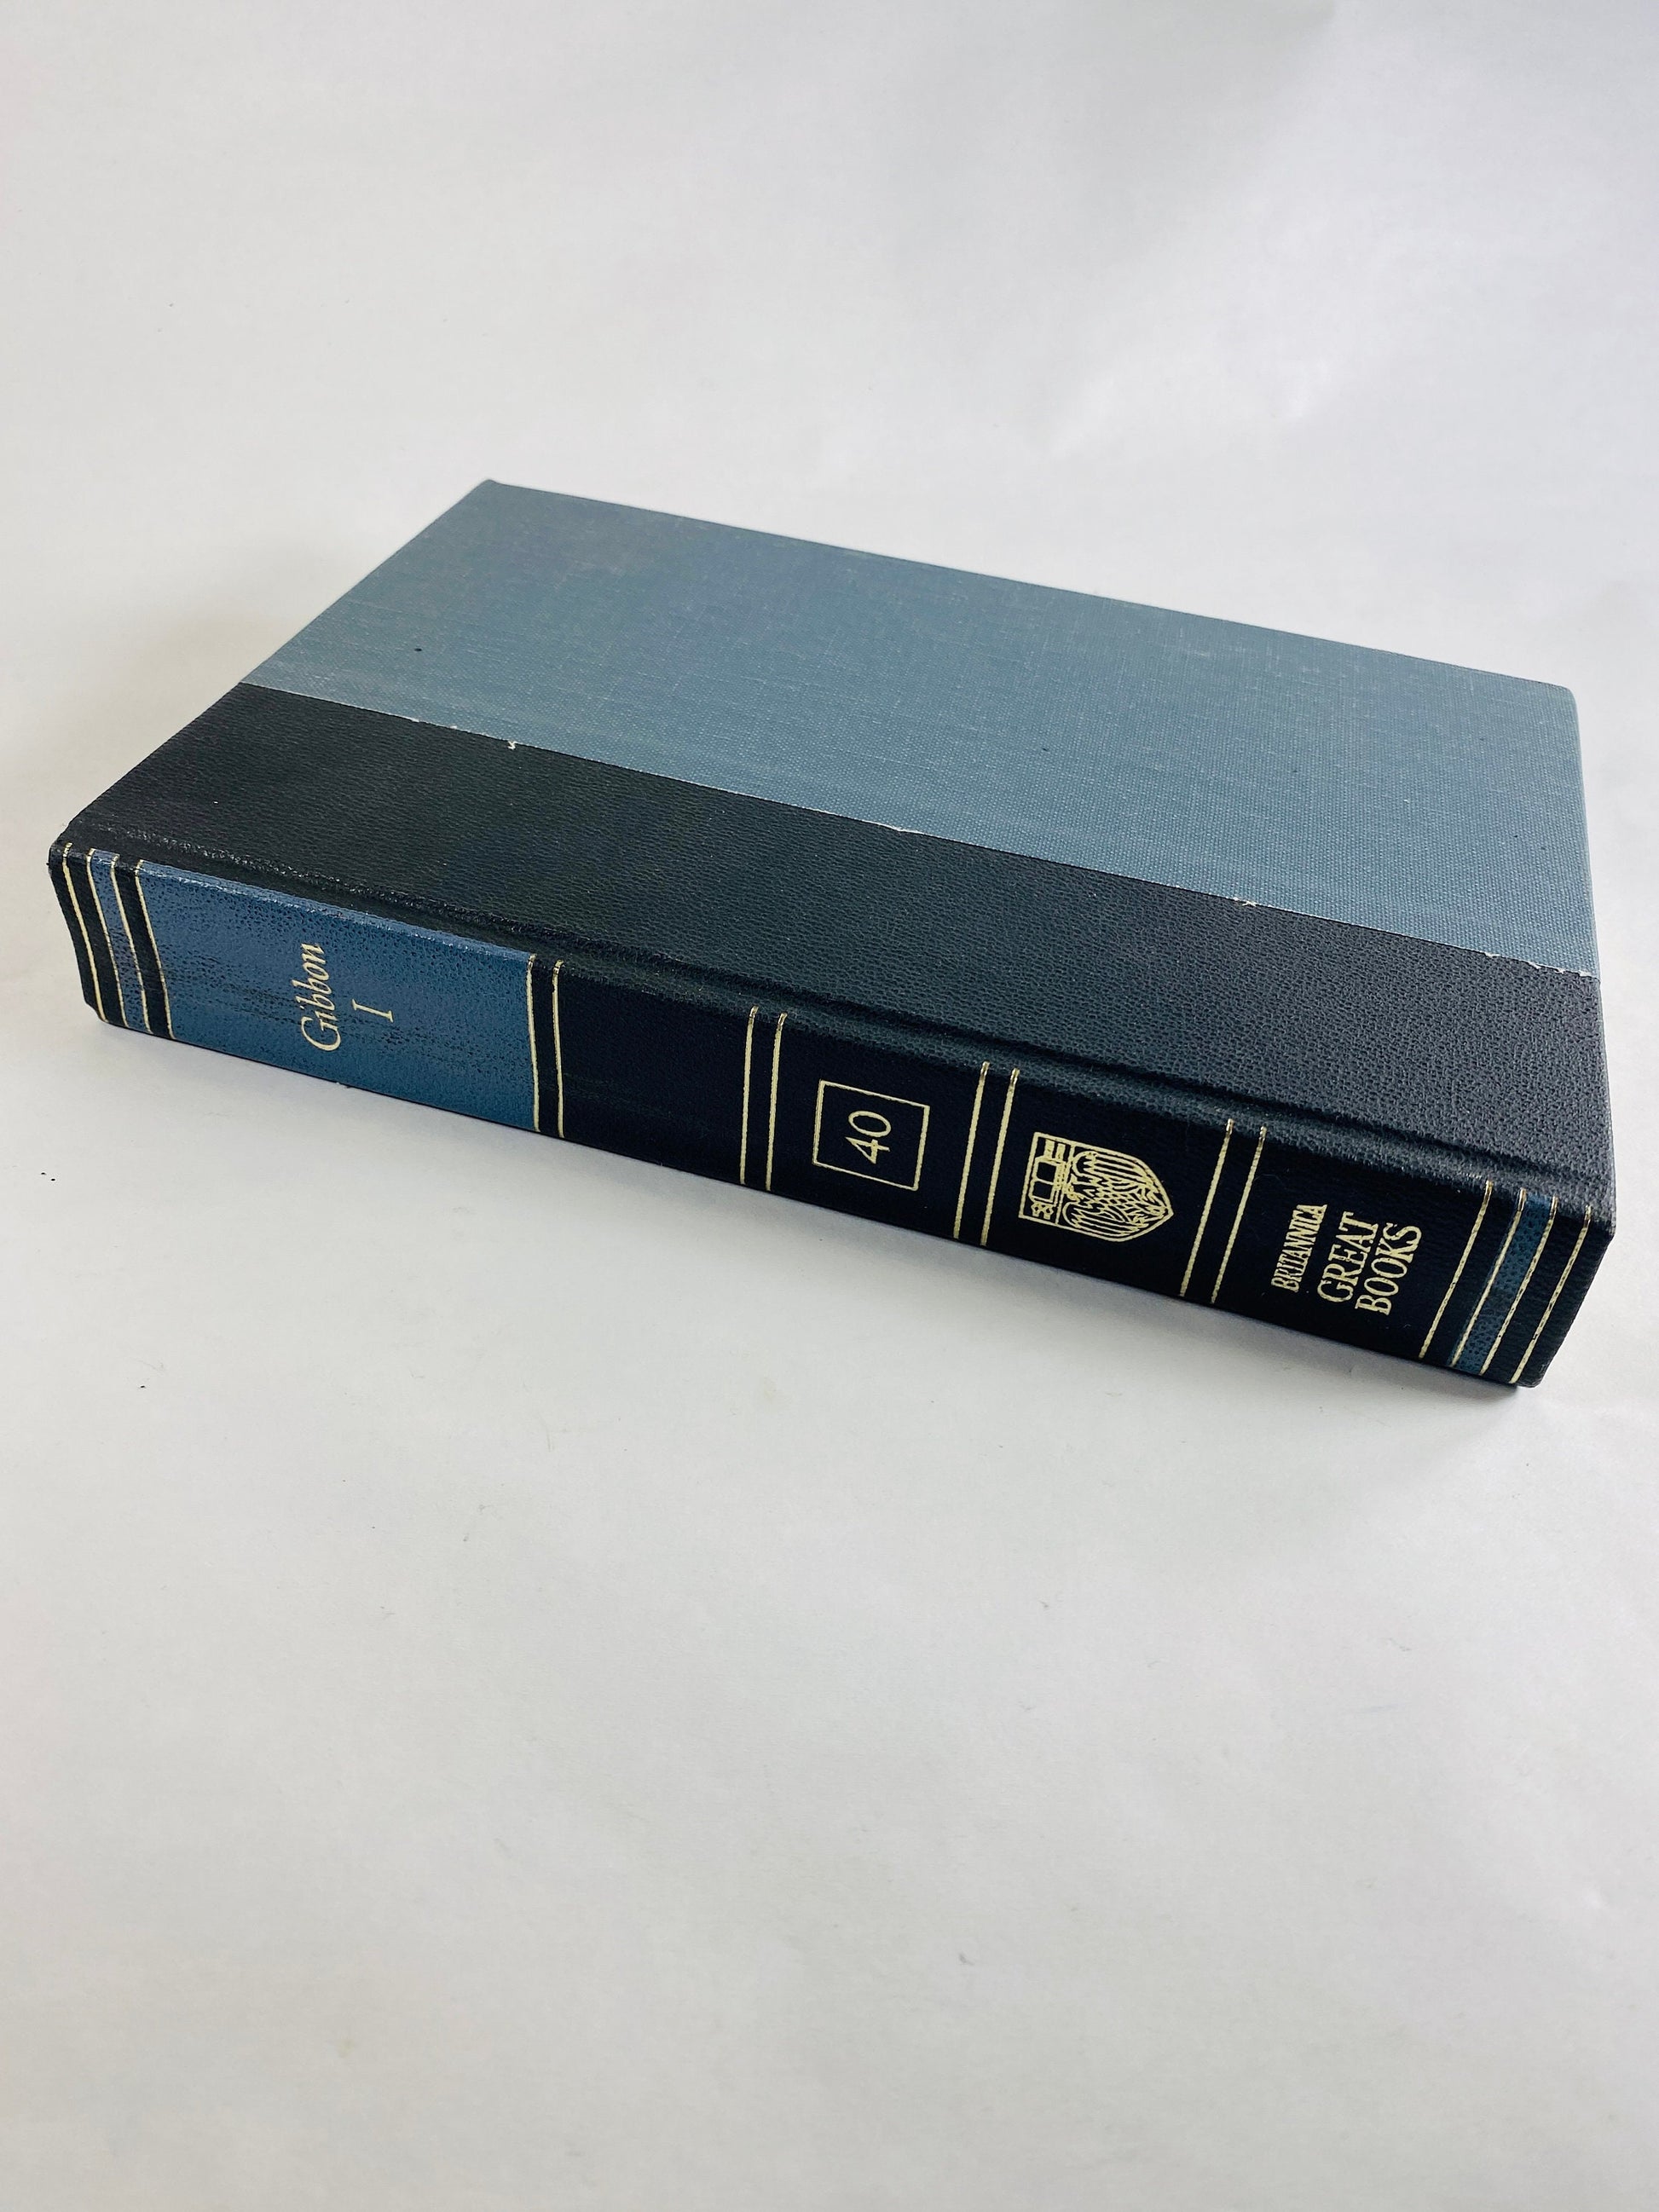 GORGEOUS vintage blue Tacitus Thucydides Herodotus Gibbon Britannica Great Books Staging bookshelf decor circa 1986